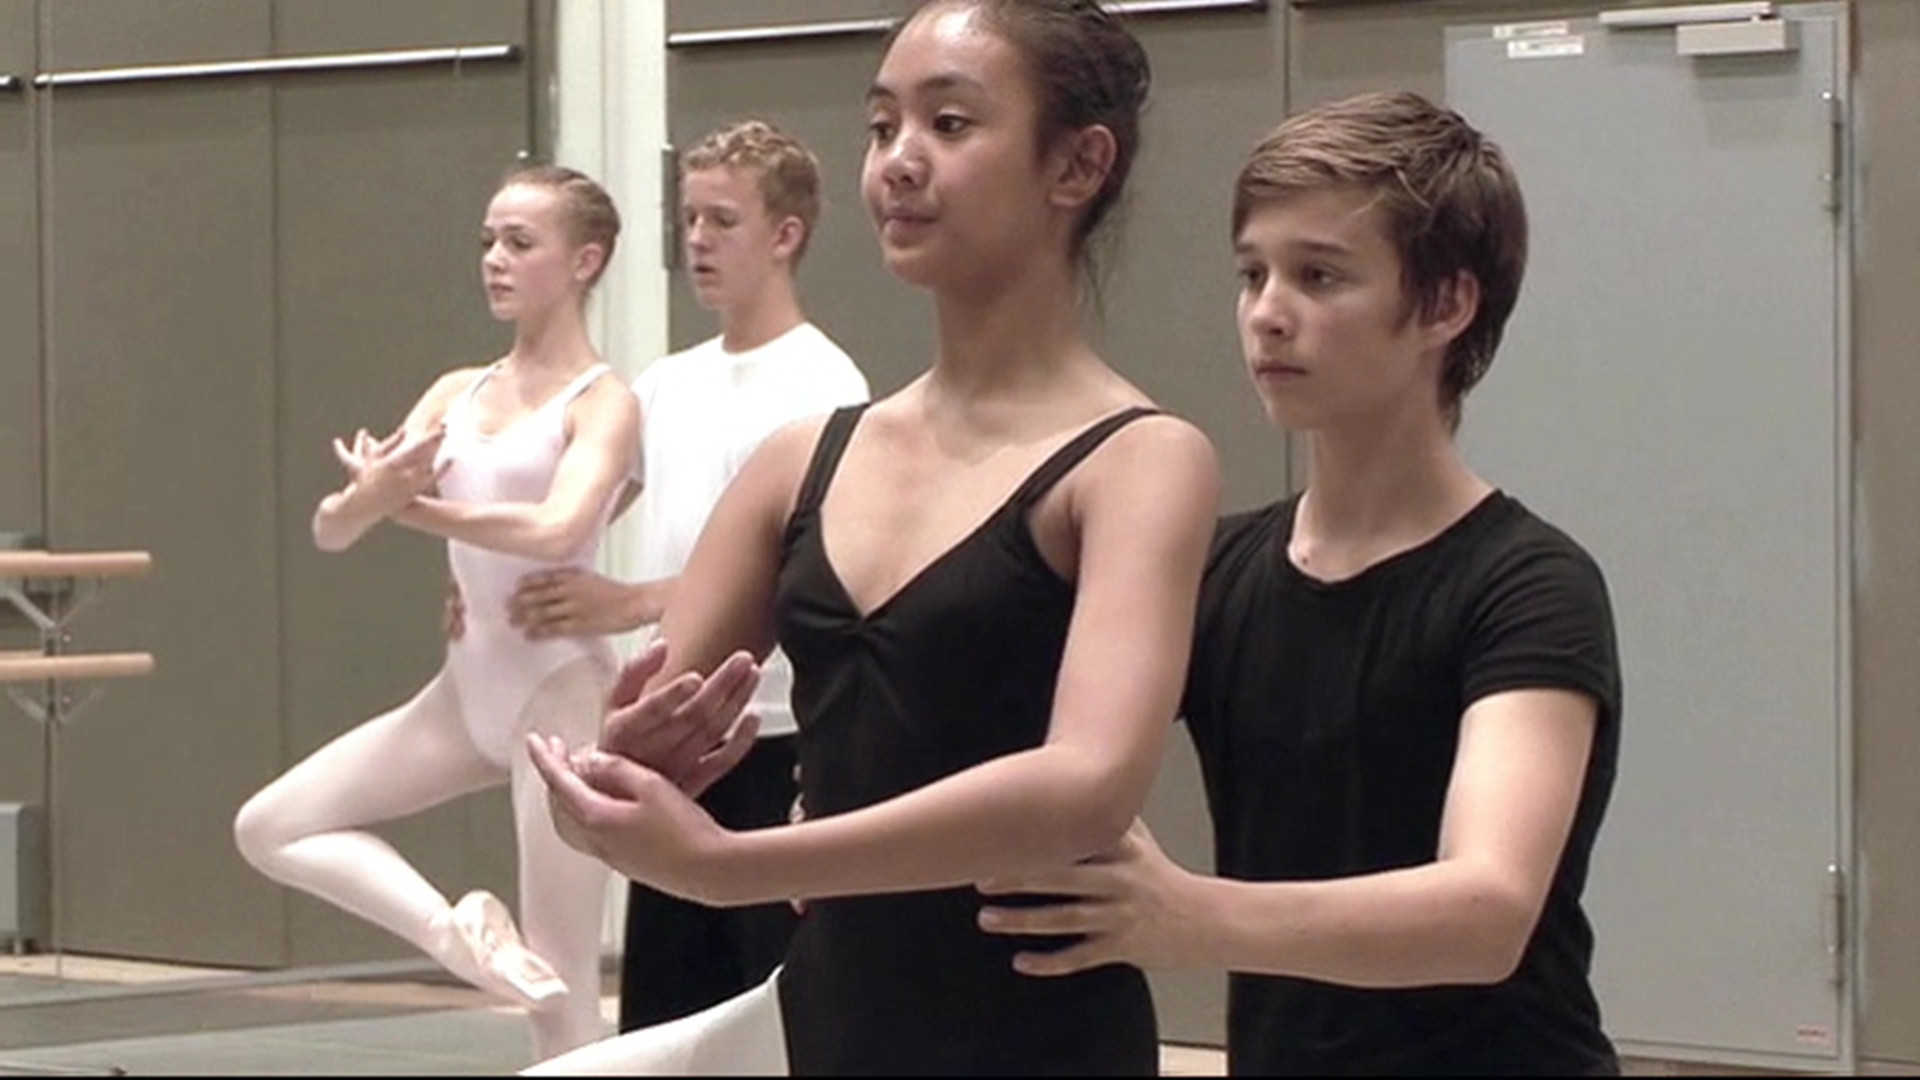 《芭蕾美少年》日本预告片 男孩的芭蕾梦
		
	
    
        Ballet Boys